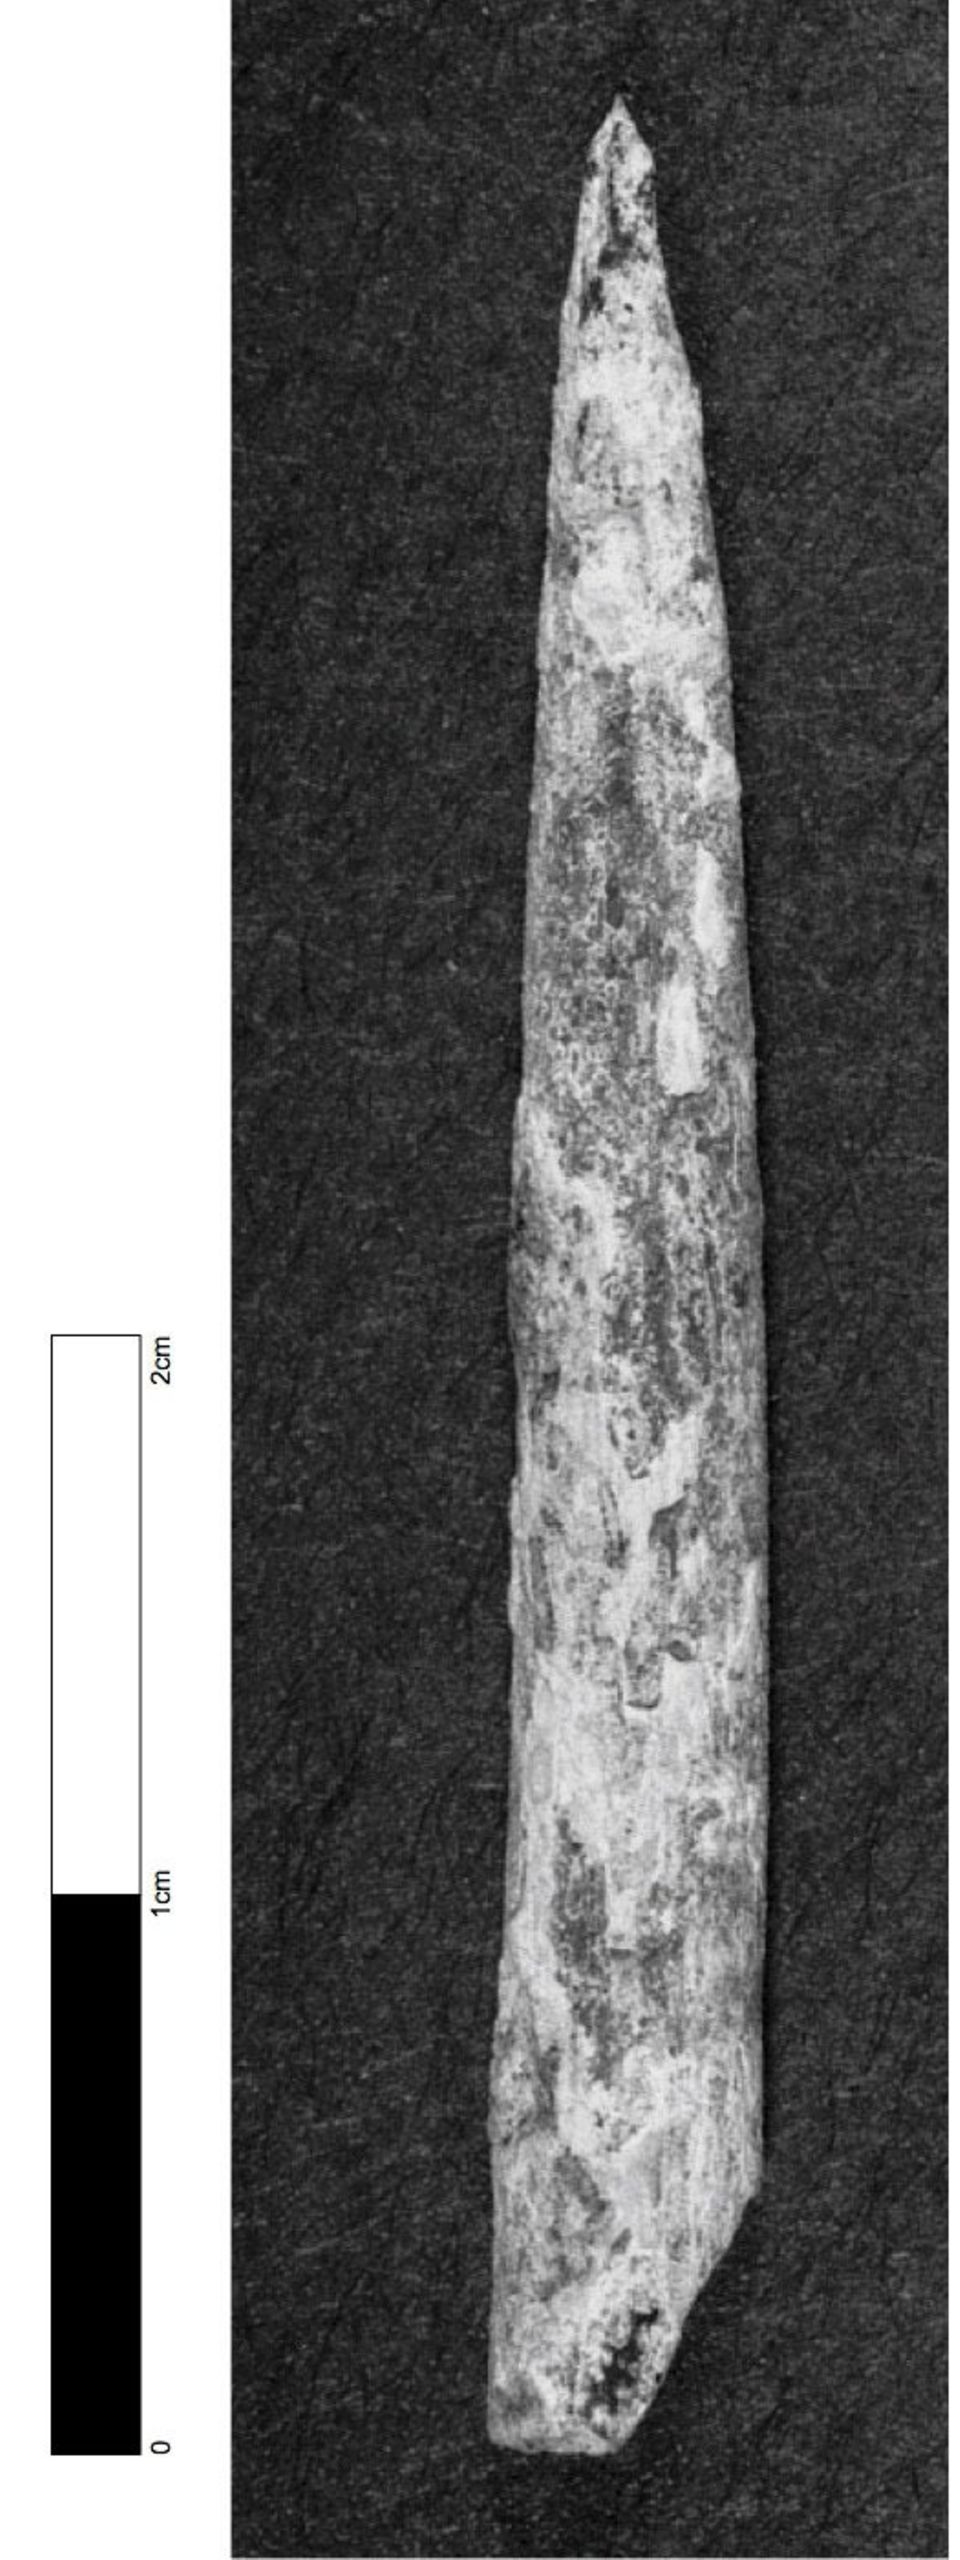 Das älteste Knochenwerkzeug, das in Australien bislang entdeckt wurde, stammt aus der "Warratyi"-Höhle.